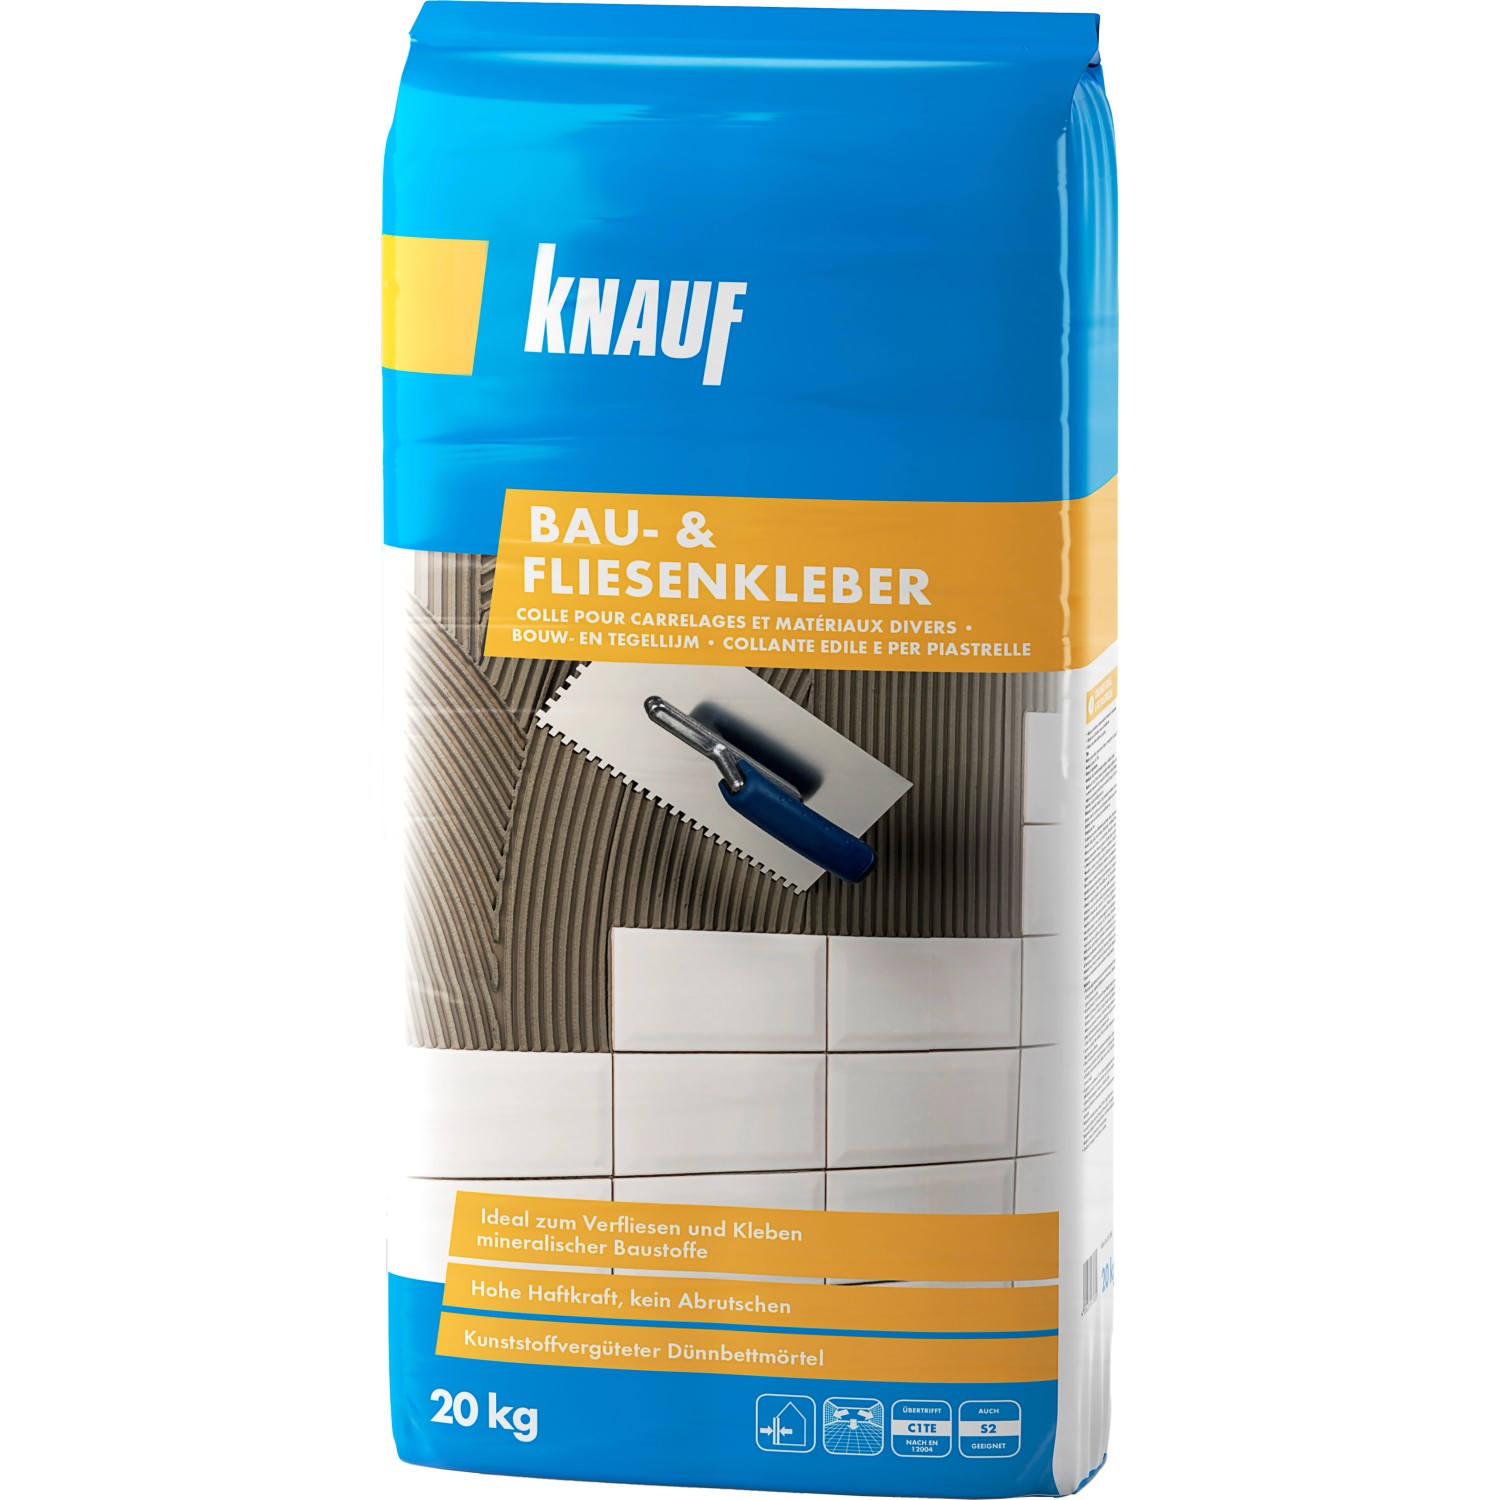 Knauf Bau- & Fliesenkleber Grau 20 kg von Knauf